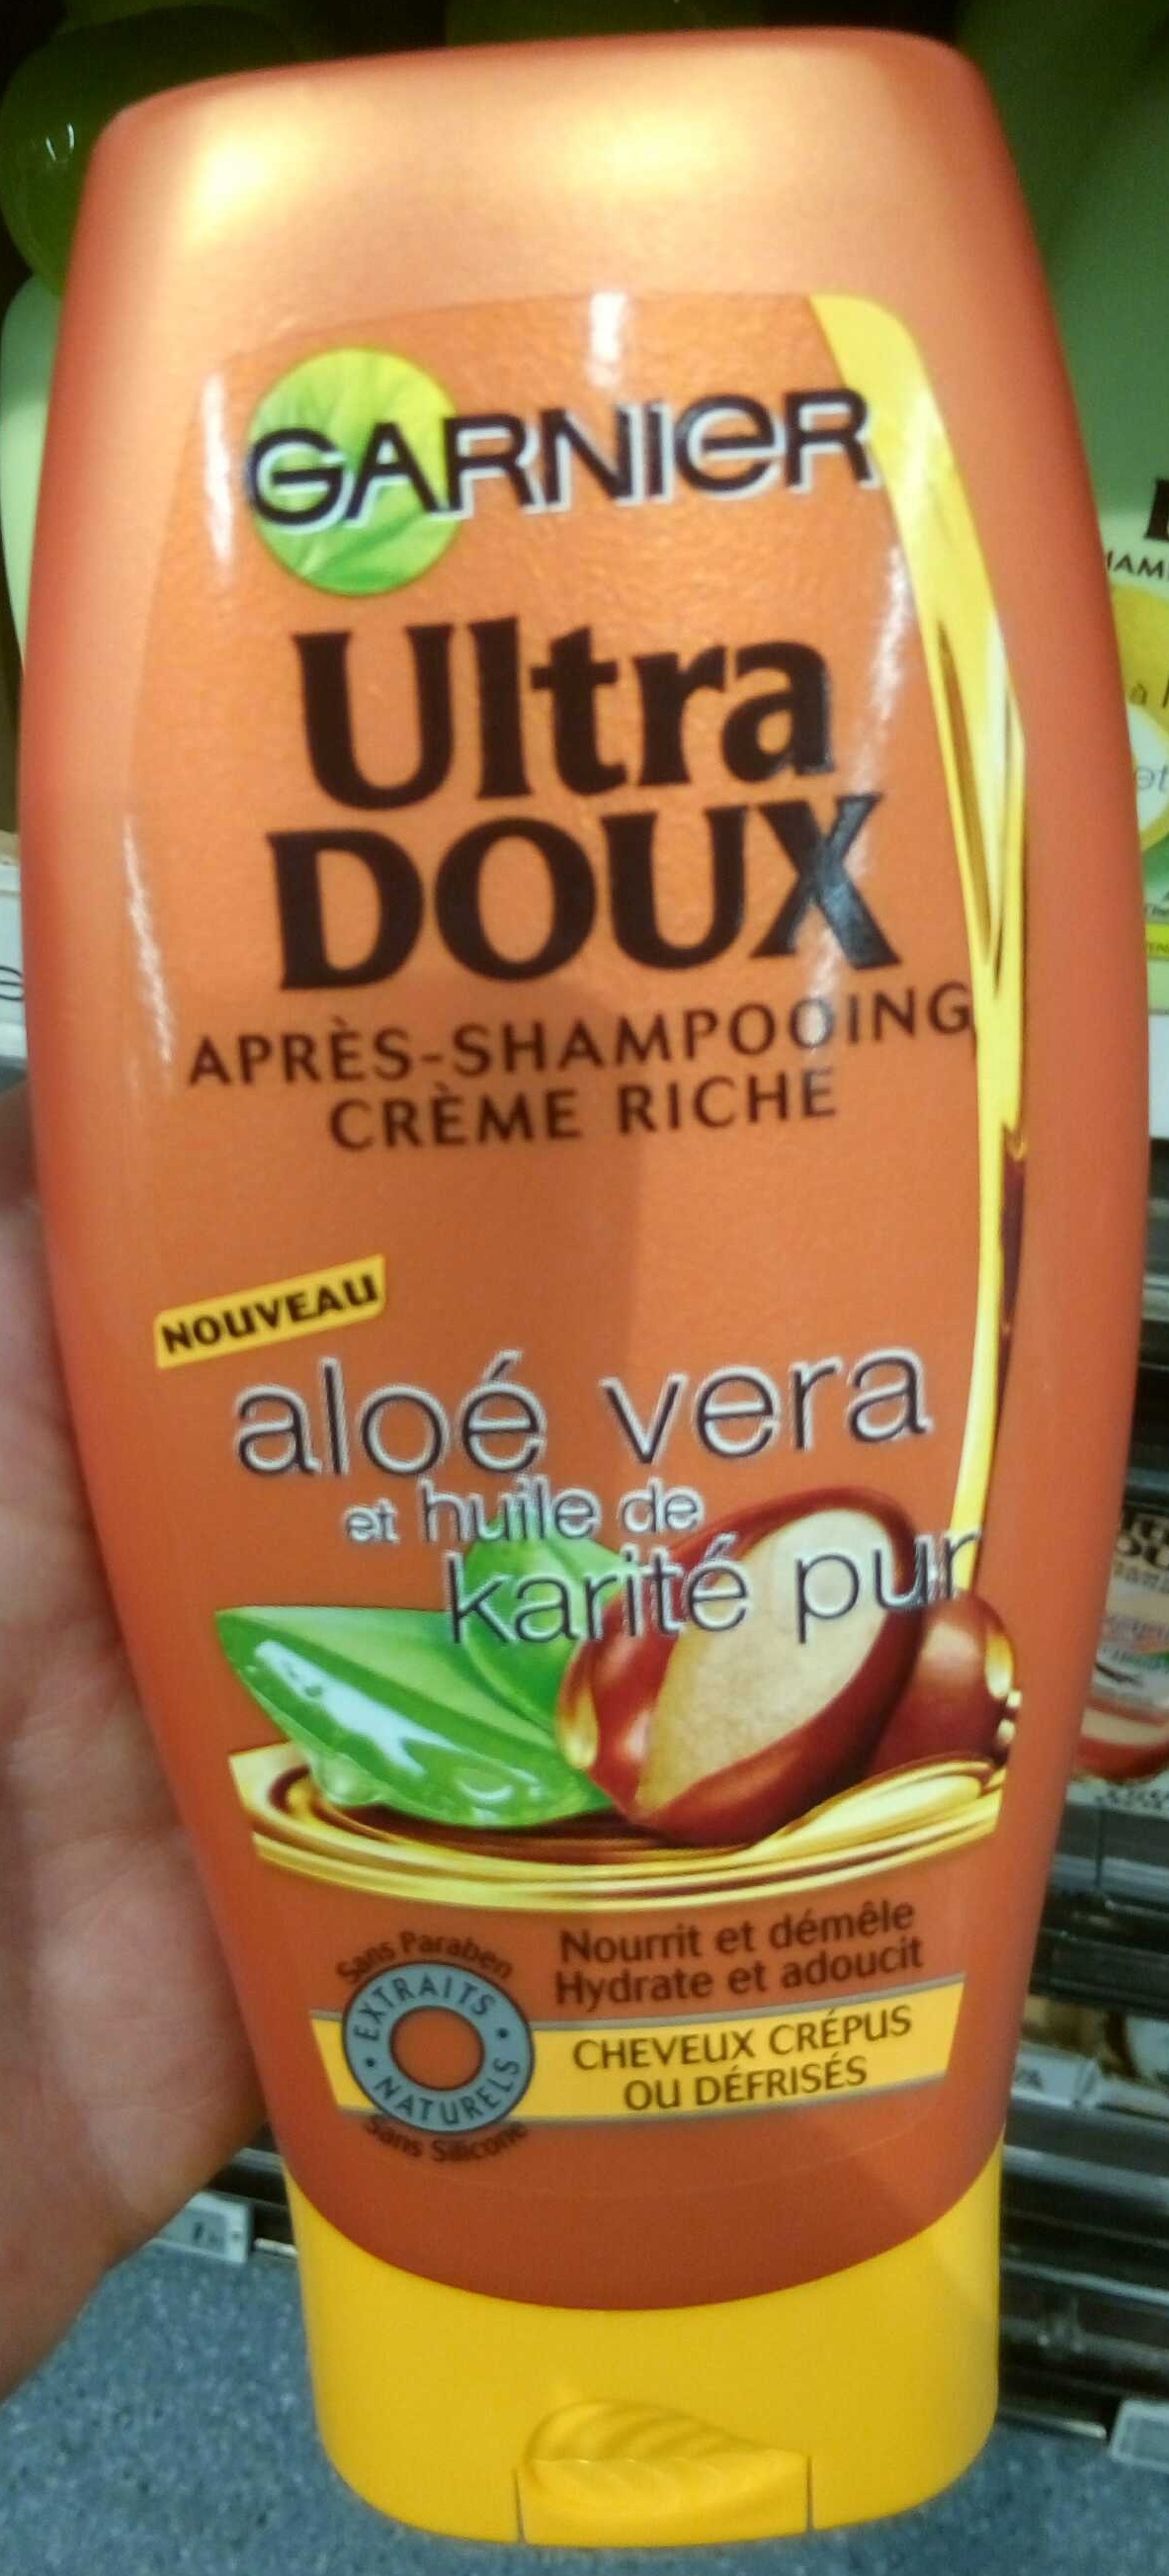 Ultra Doux Après-shampooing crème riche Aloé vera et huile de karité pur - Tuote - fr